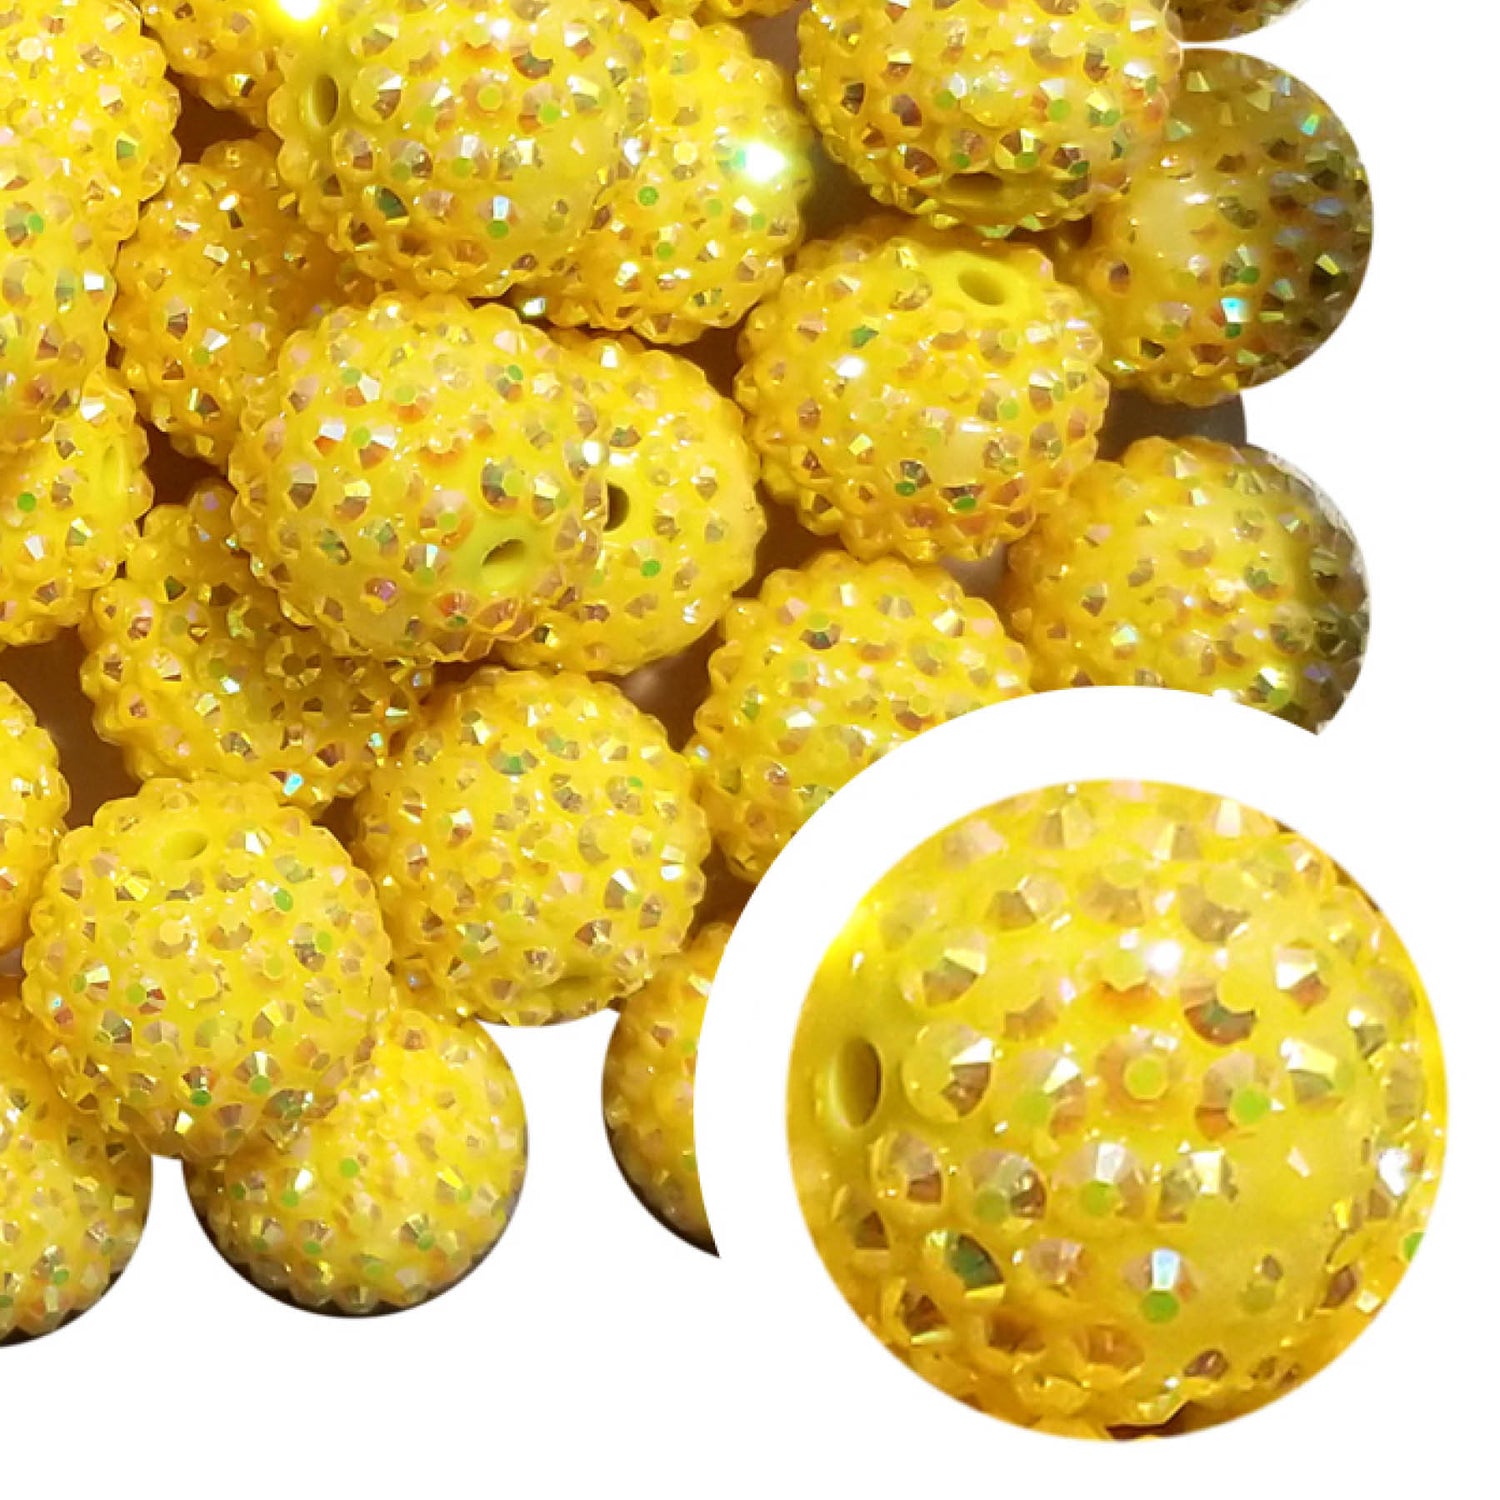 yellow rhinestone 20mm bubblegum beads